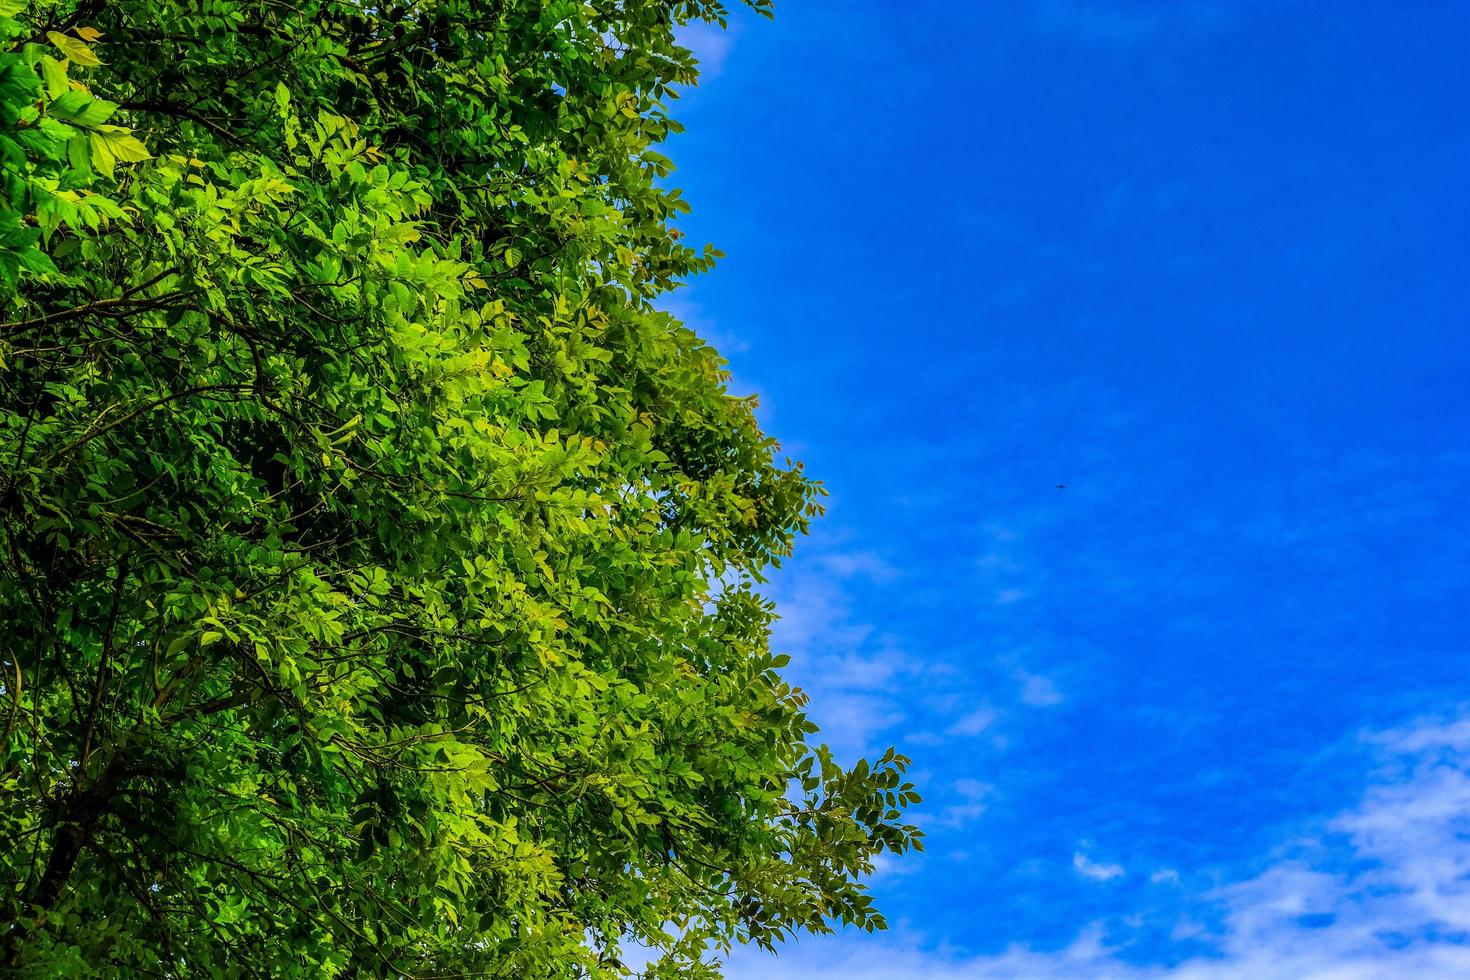 árbol de vegetación contra el cielo azul claro que puede hacer que la frescura sea una emoción. foto